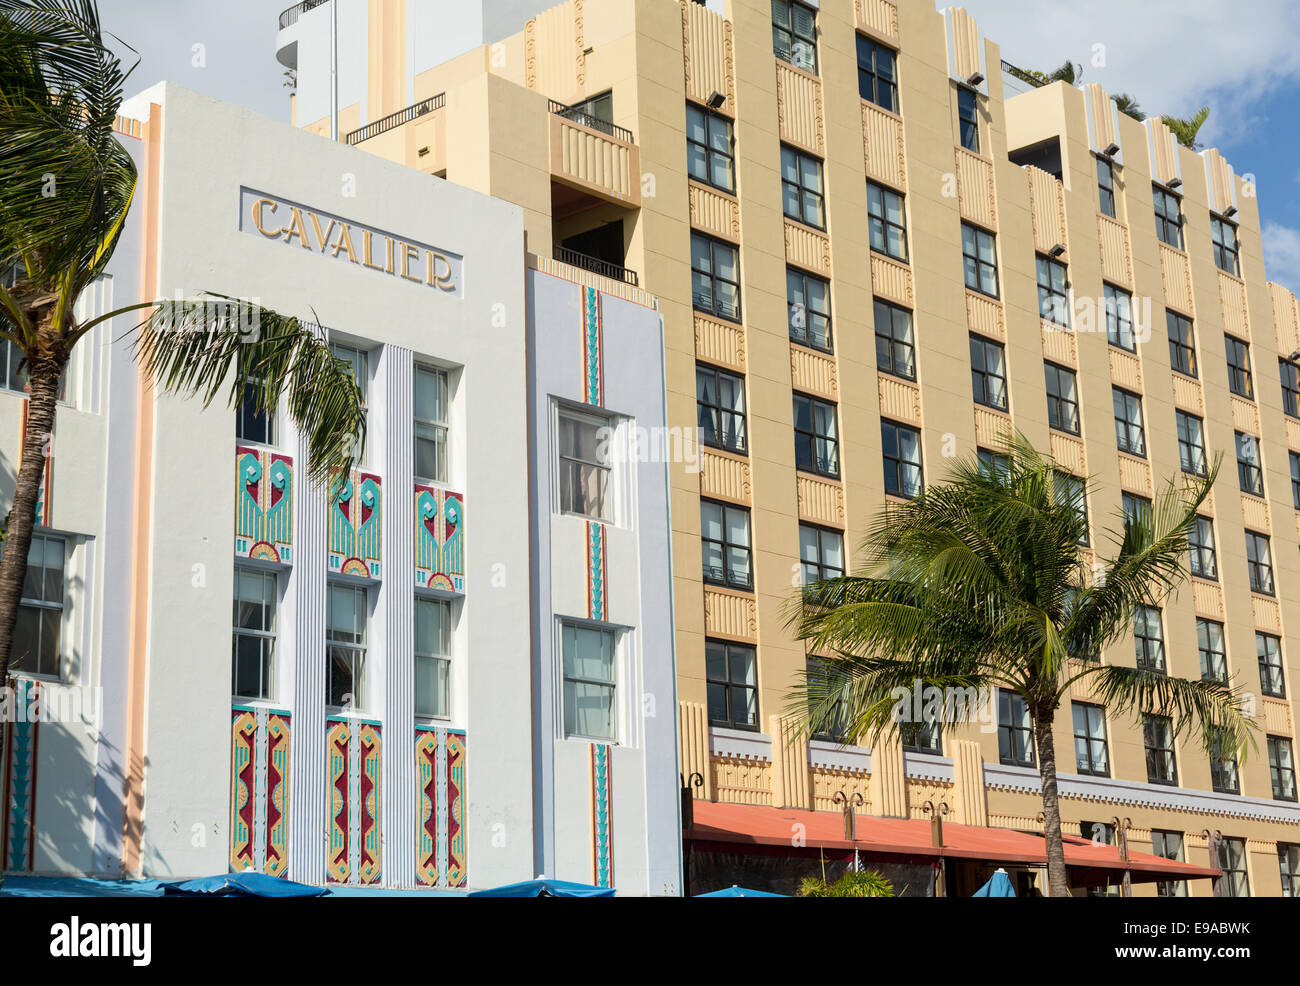 Cavalier hotel in Miami Beach art deco Stock Photo